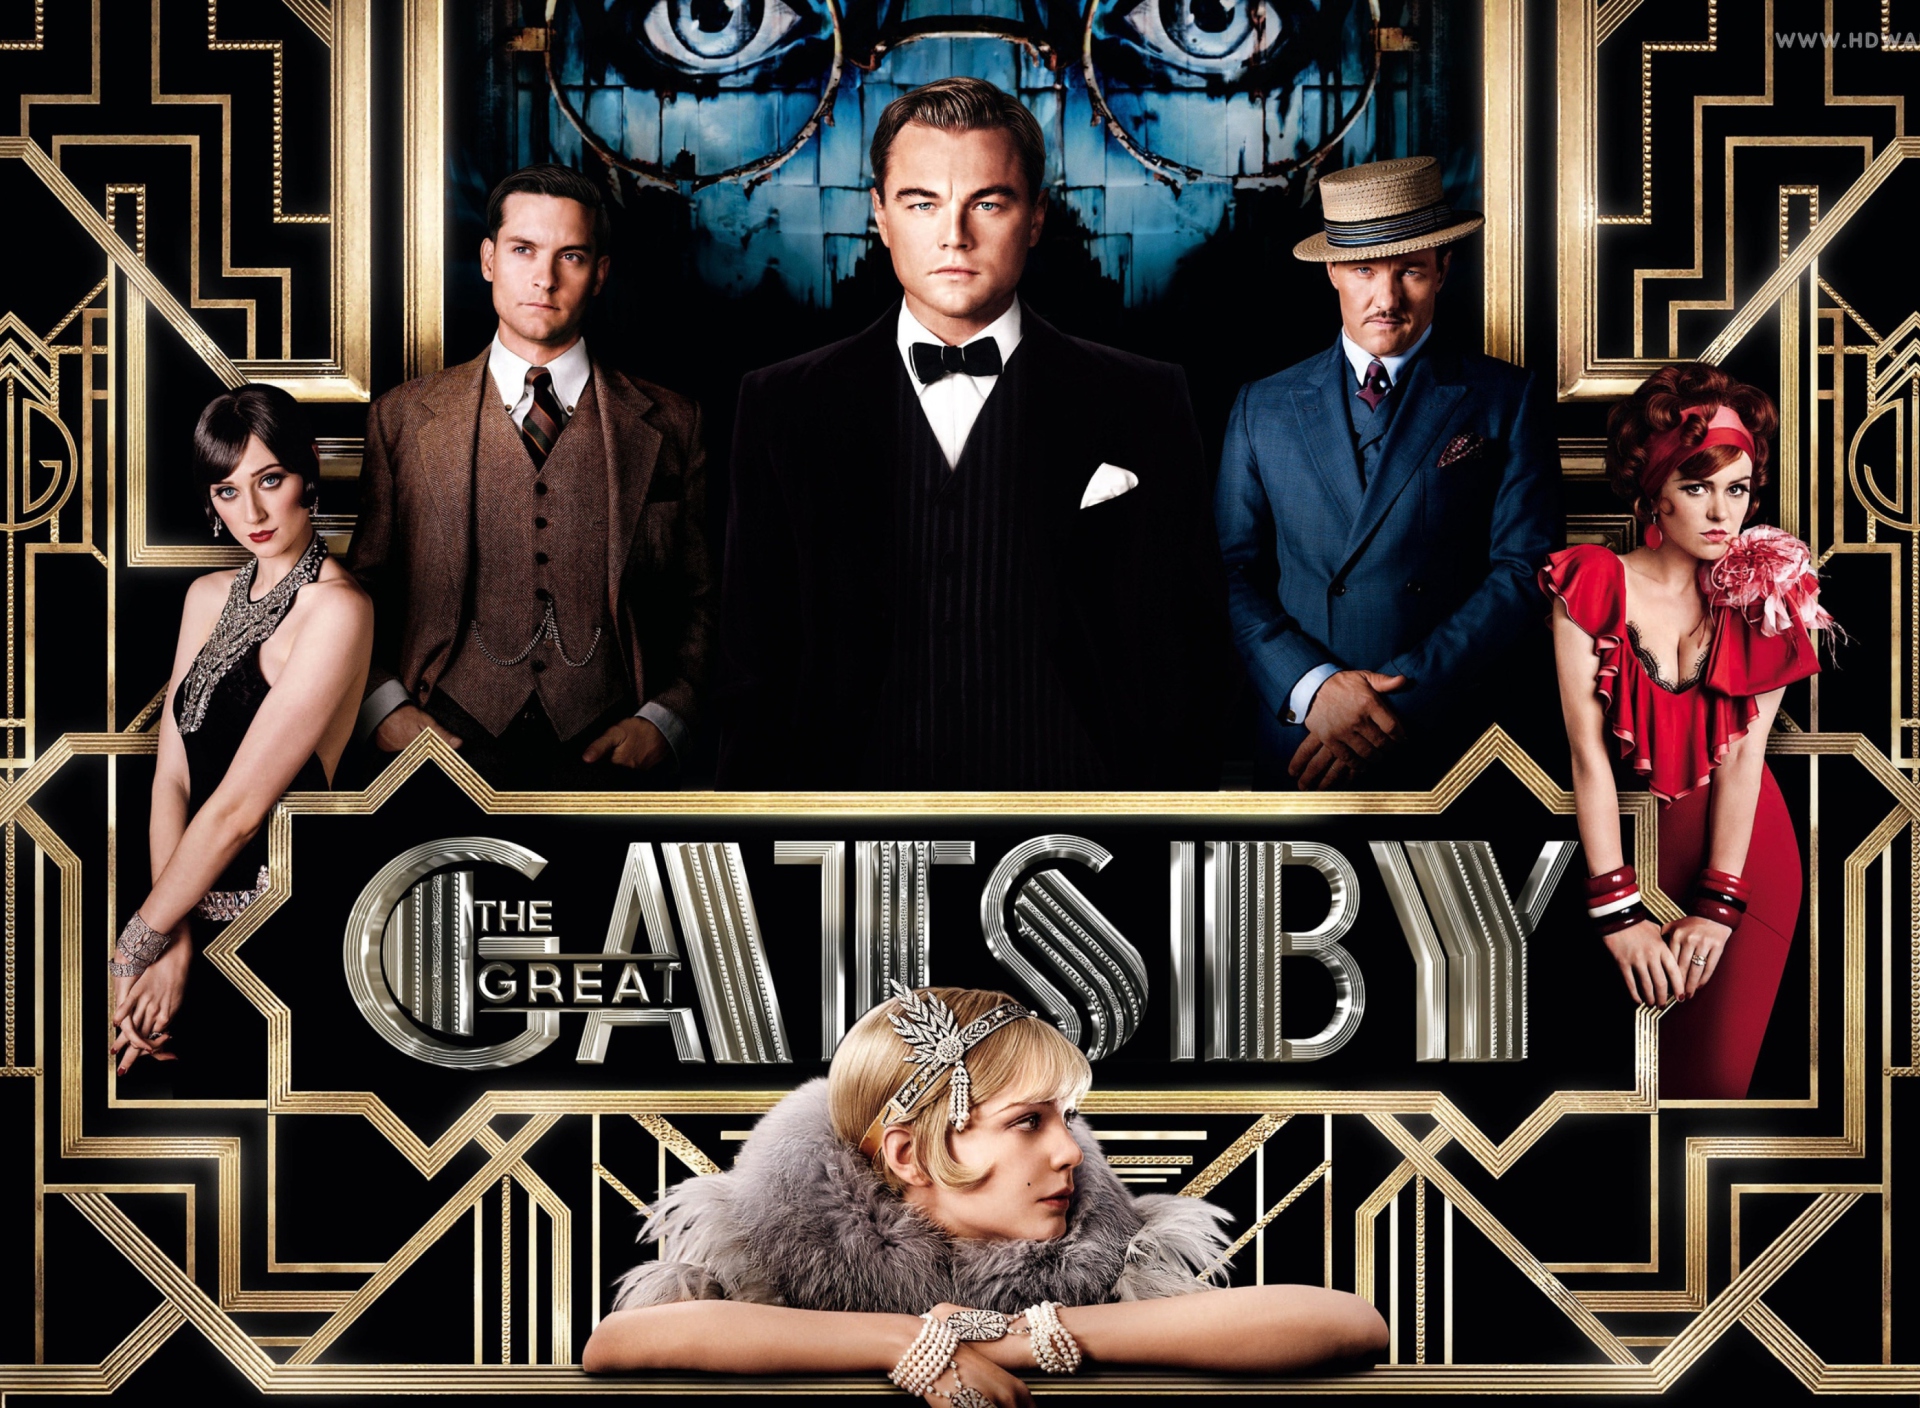 Обои The Great Gatsby Movie 1920x1408